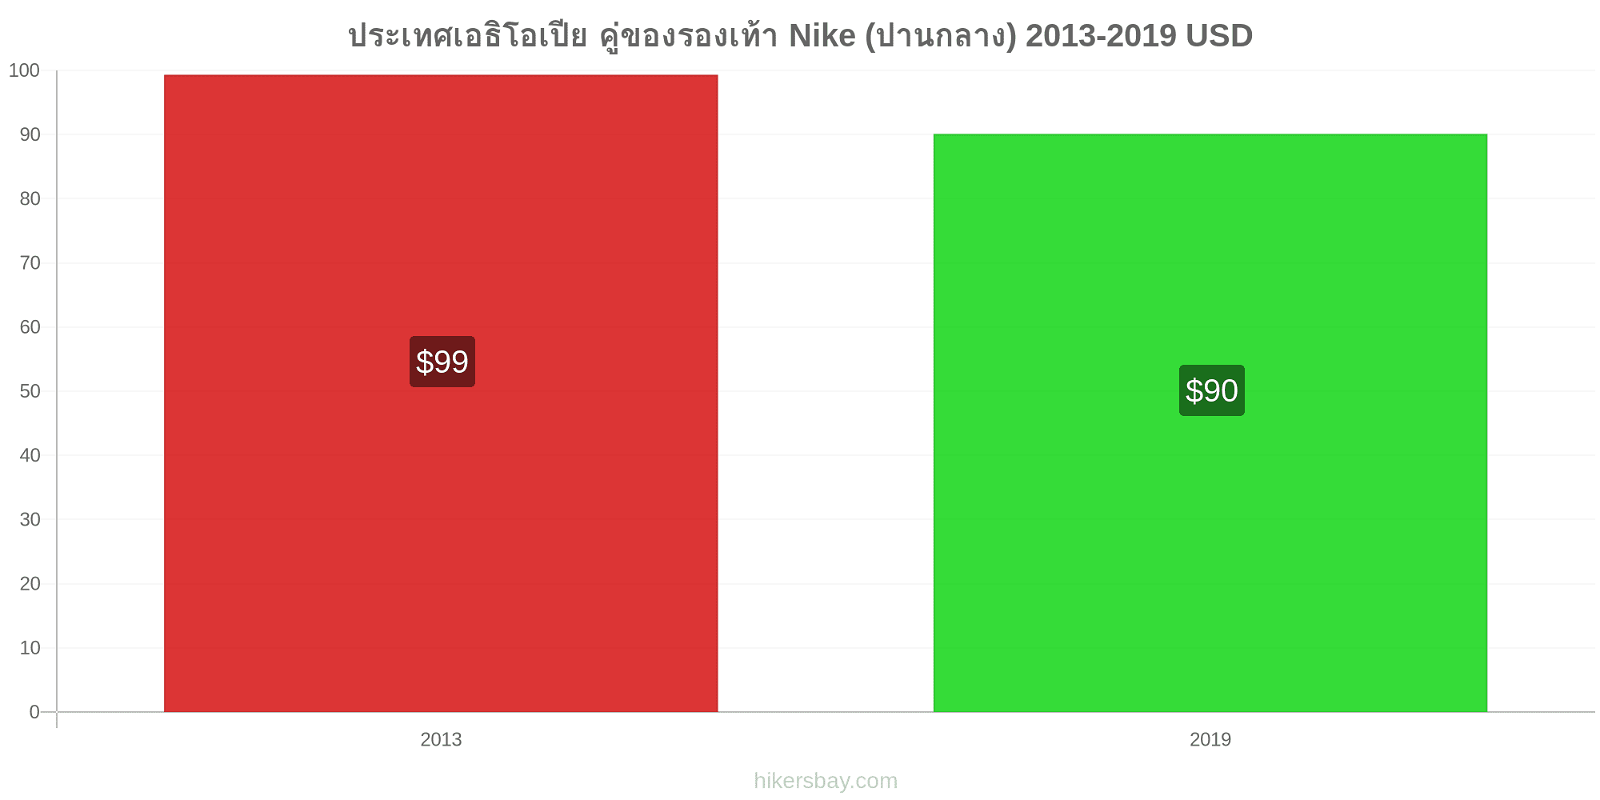 ประเทศเอธิโอเปีย การเปลี่ยนแปลงราคา คู่ของรองเท้า Nike (ปานกลาง) hikersbay.com